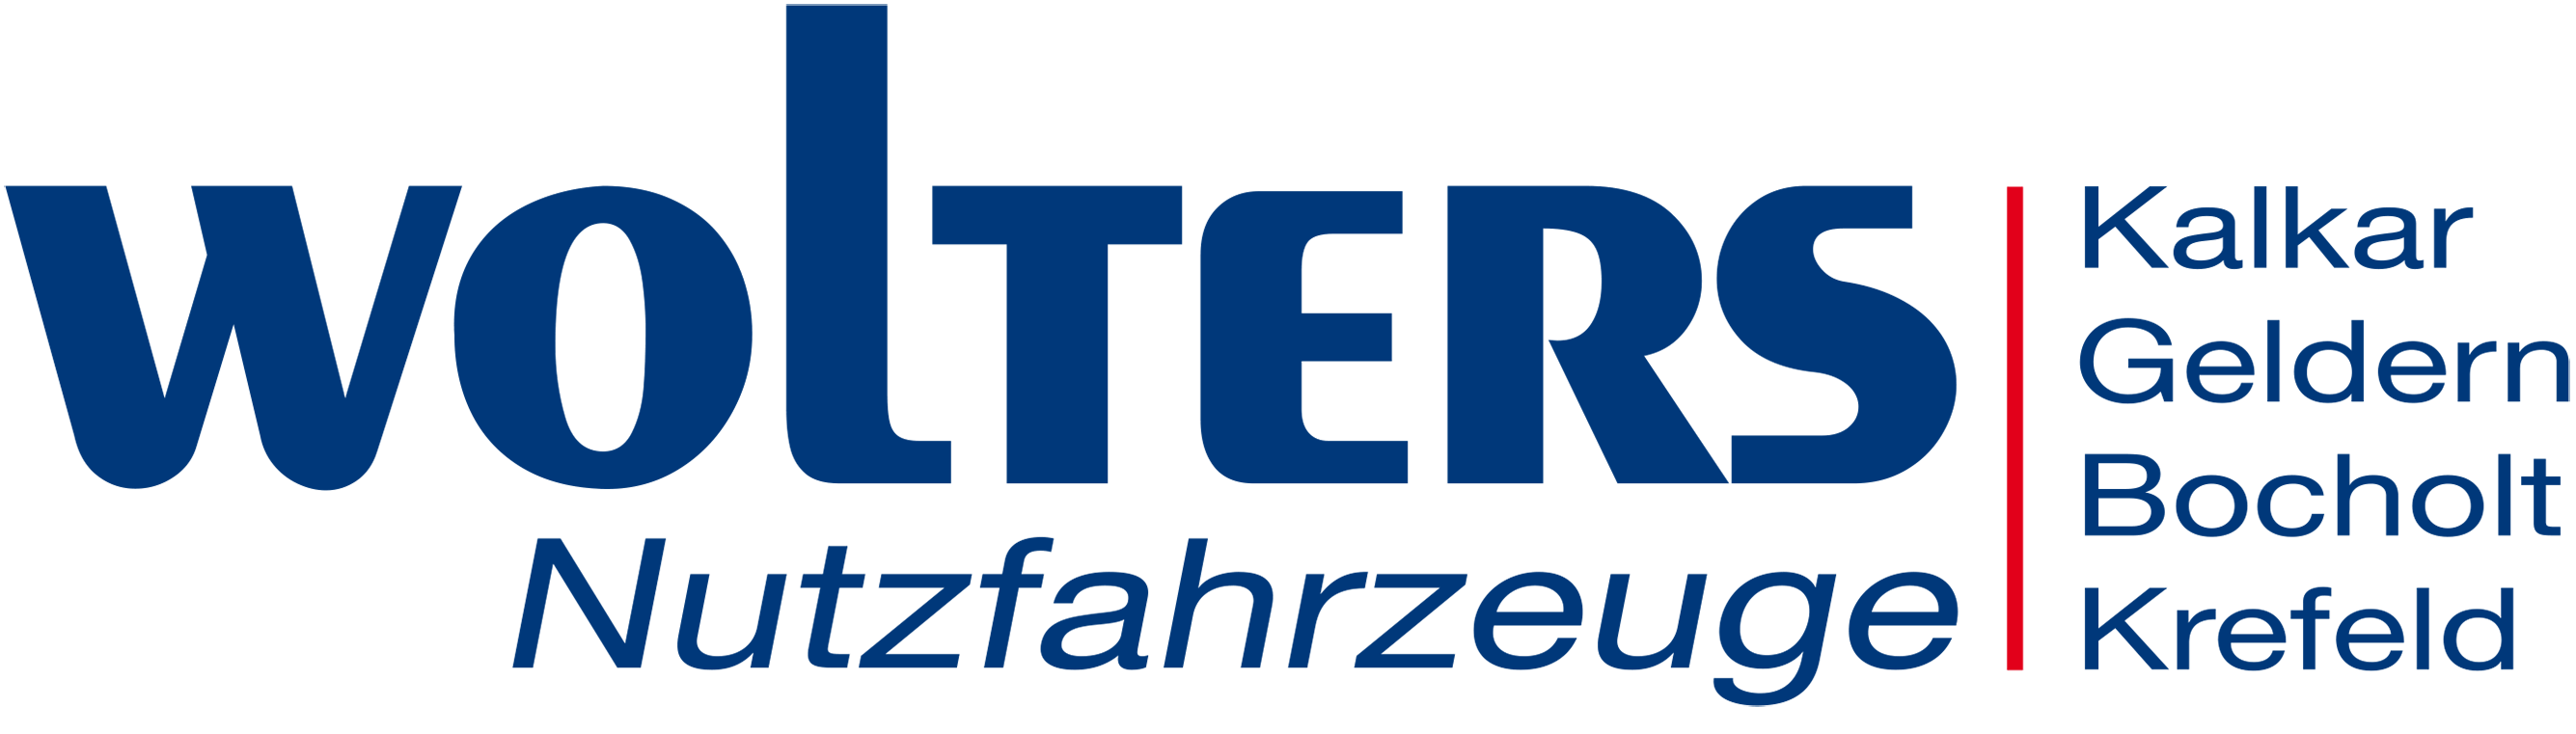 reintjes-digital-portfolio-wolters-nutzfahrzeuge-logo